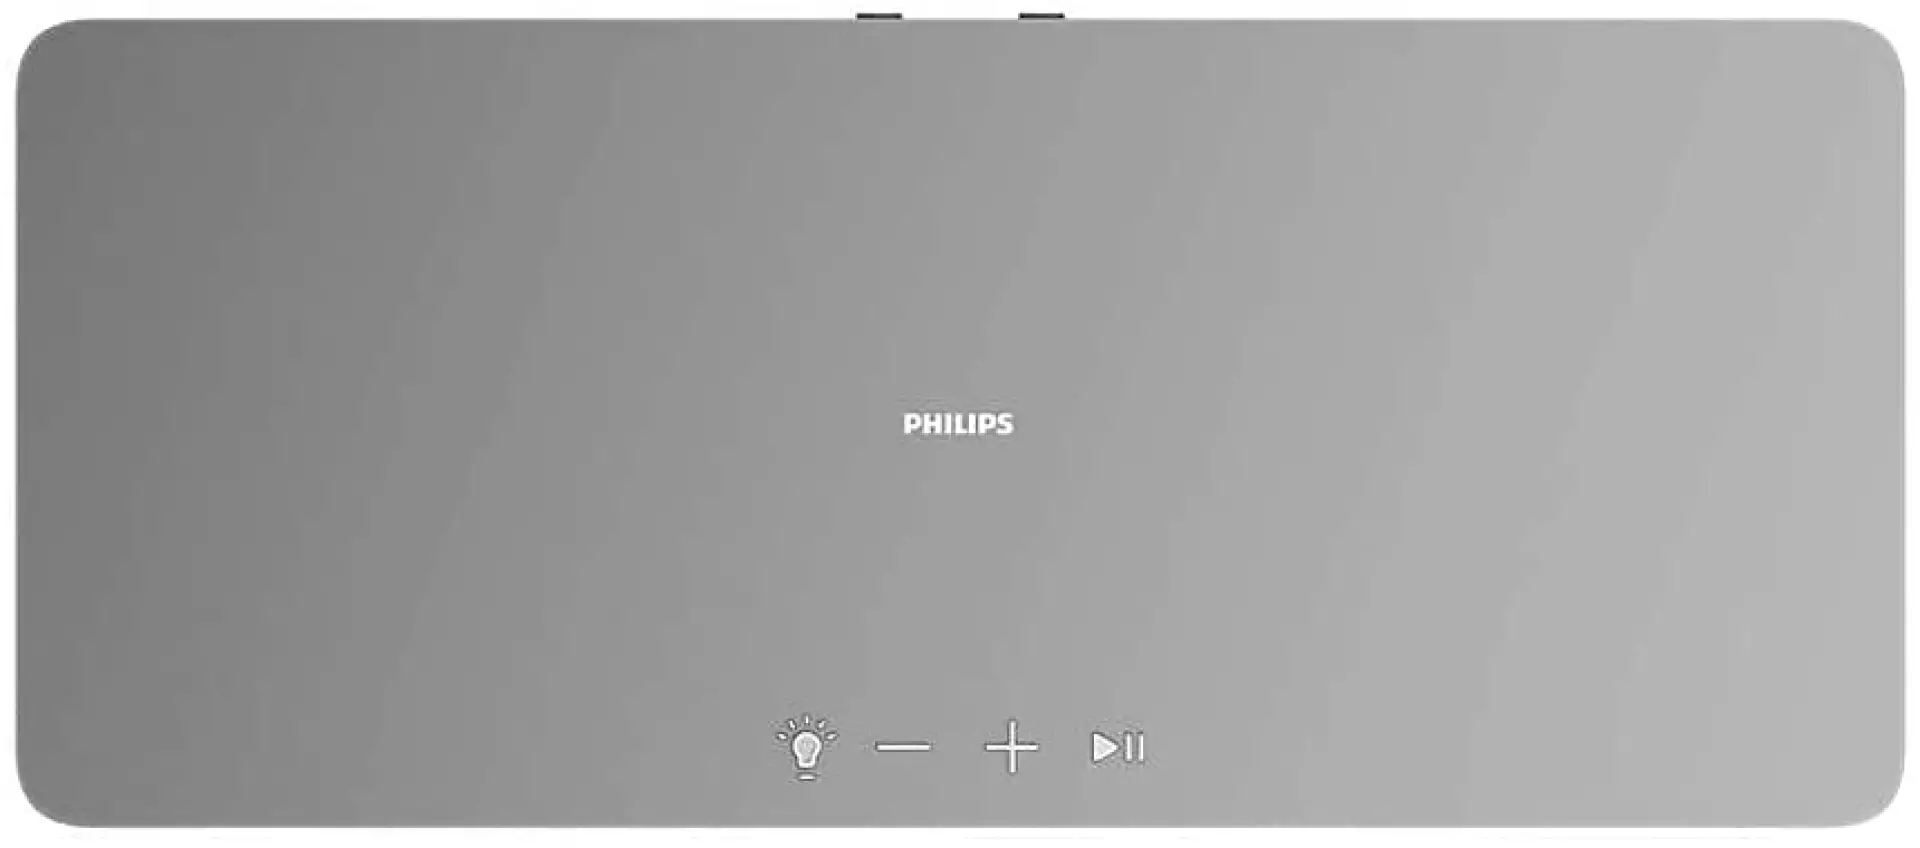 Philips TAW6505 BT zvucnik